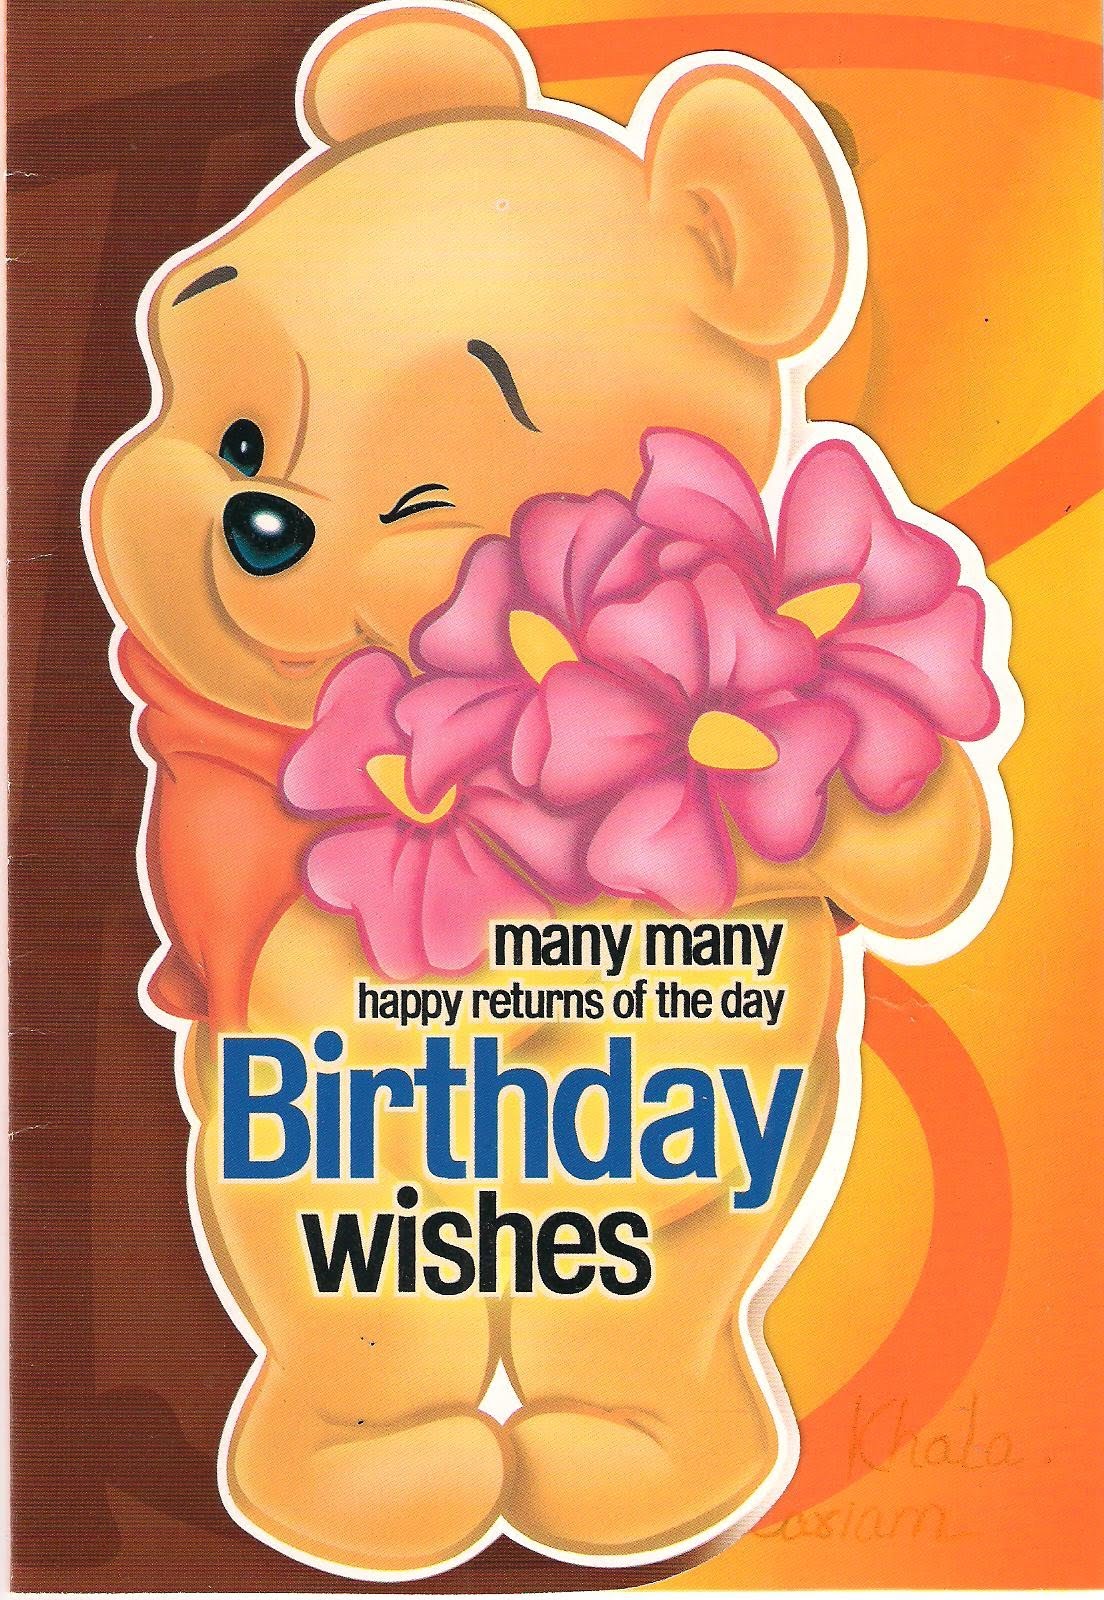 Cute Teddy Bear Happy Birthday Song, Friends Forever Birthday